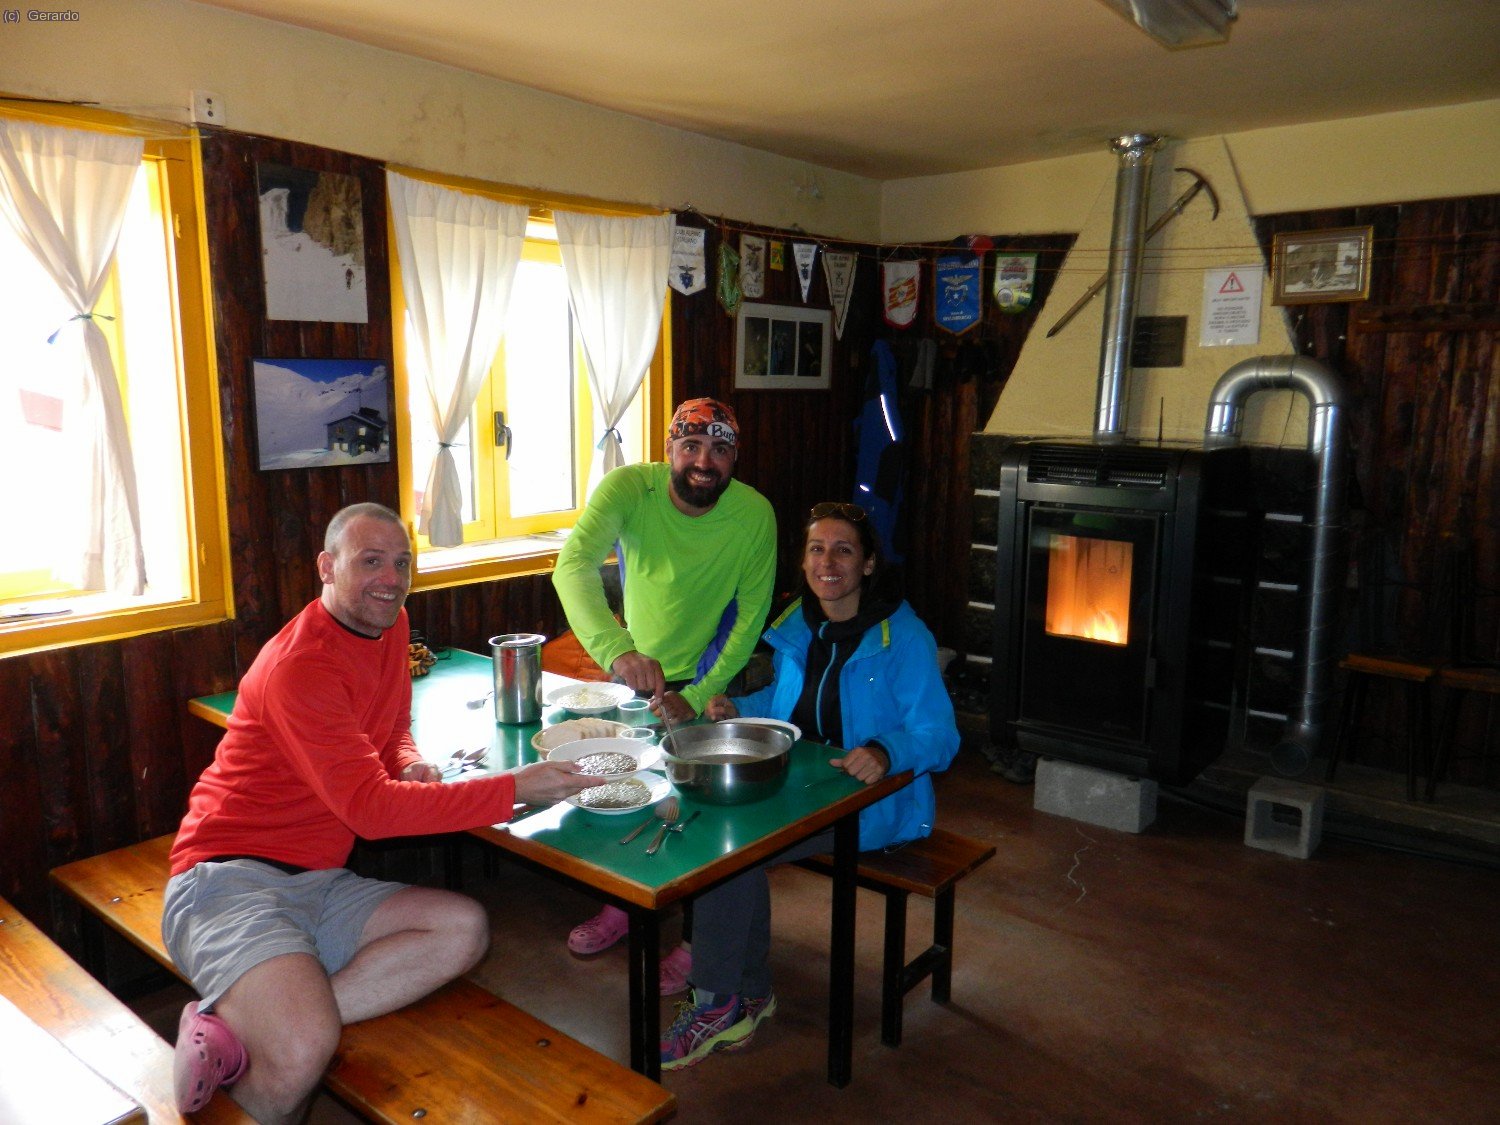 Carlos, Tomás y Paula en el mítico y añejo comedor de Góriz. Un lugar con solera. Espero que cuando consumen la reforma, respeten los listones de madera de las paredes.